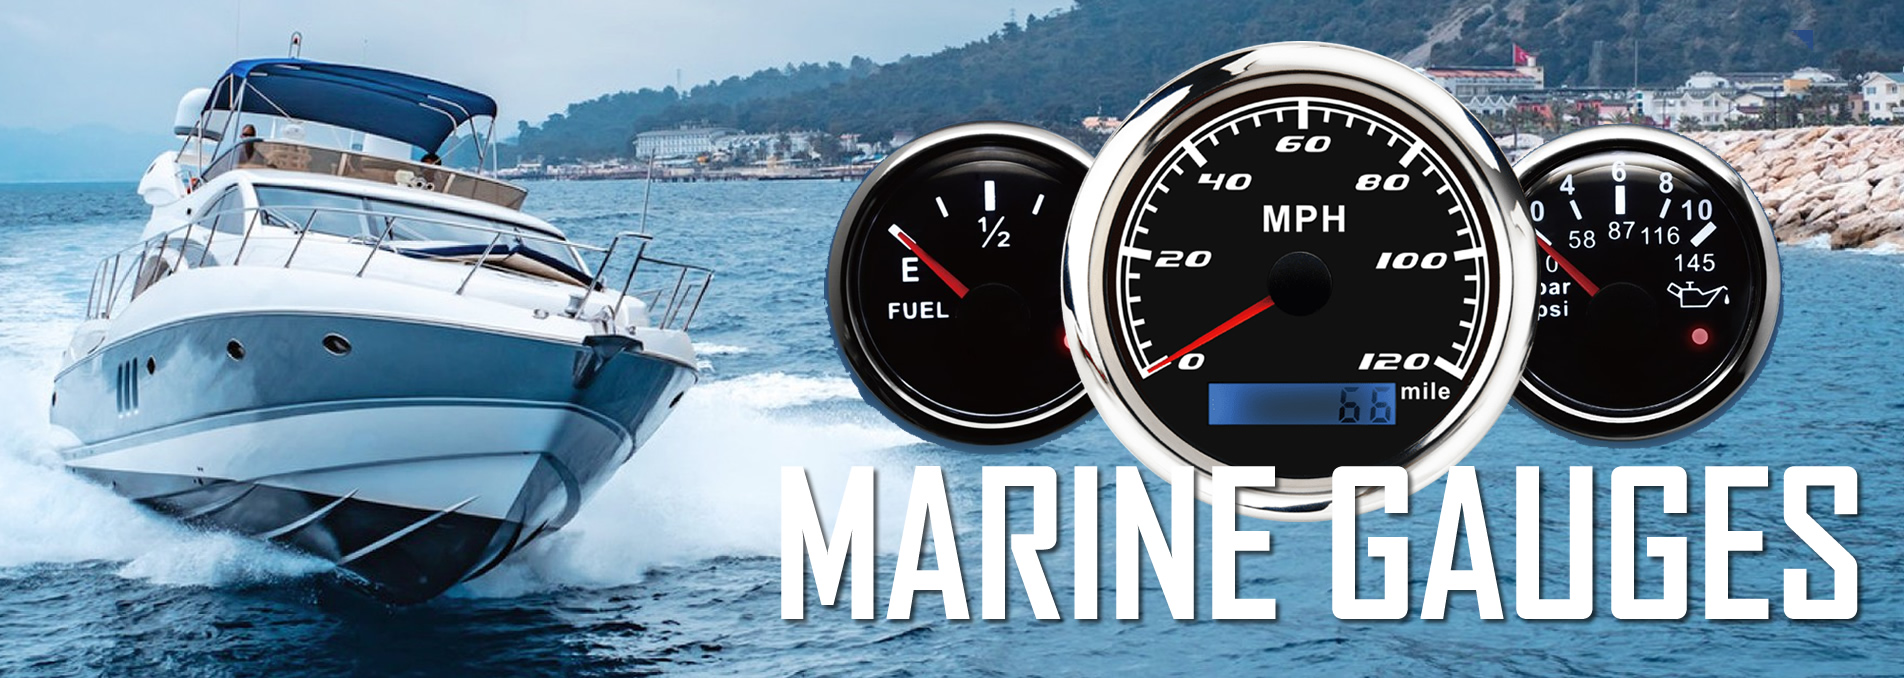 marine gauges banner